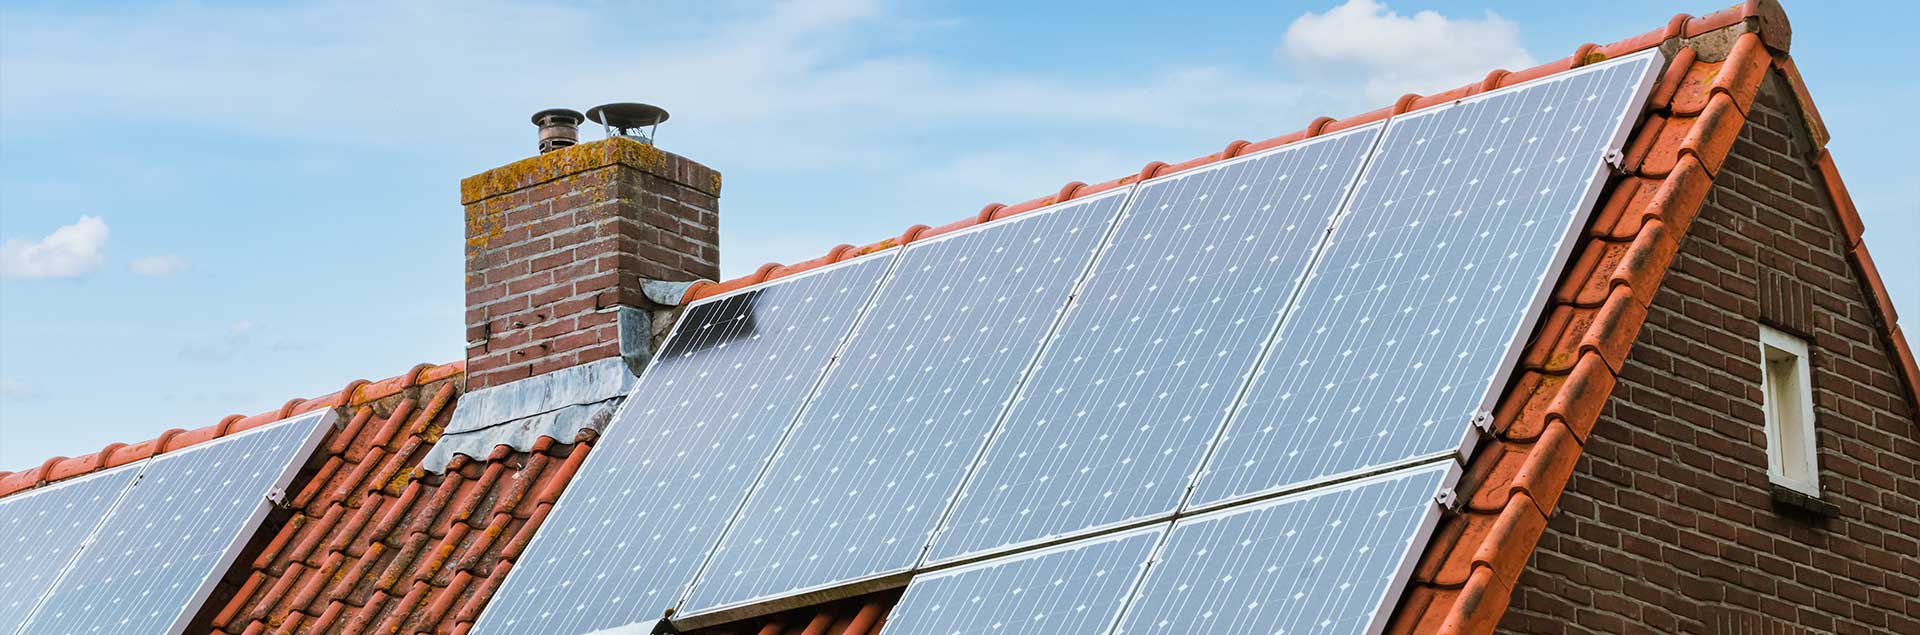 3 conceptos básicos para entender cómo funcionan tus paneles solares